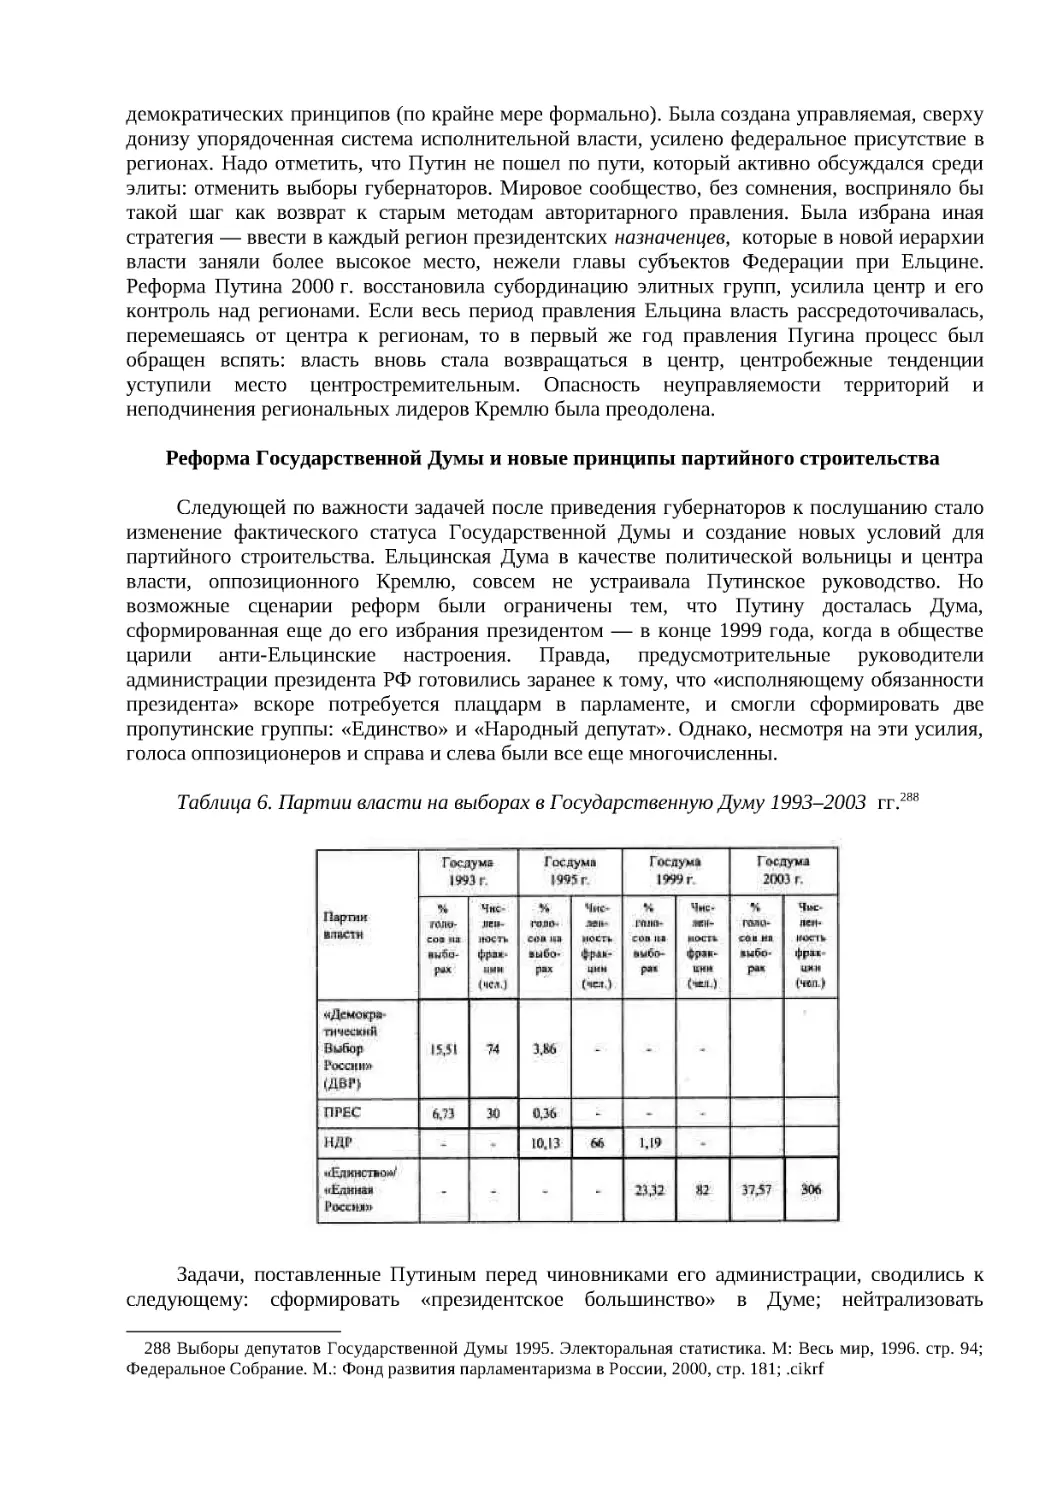 Реформа Государственной Думы и новые принципы партийного строительства